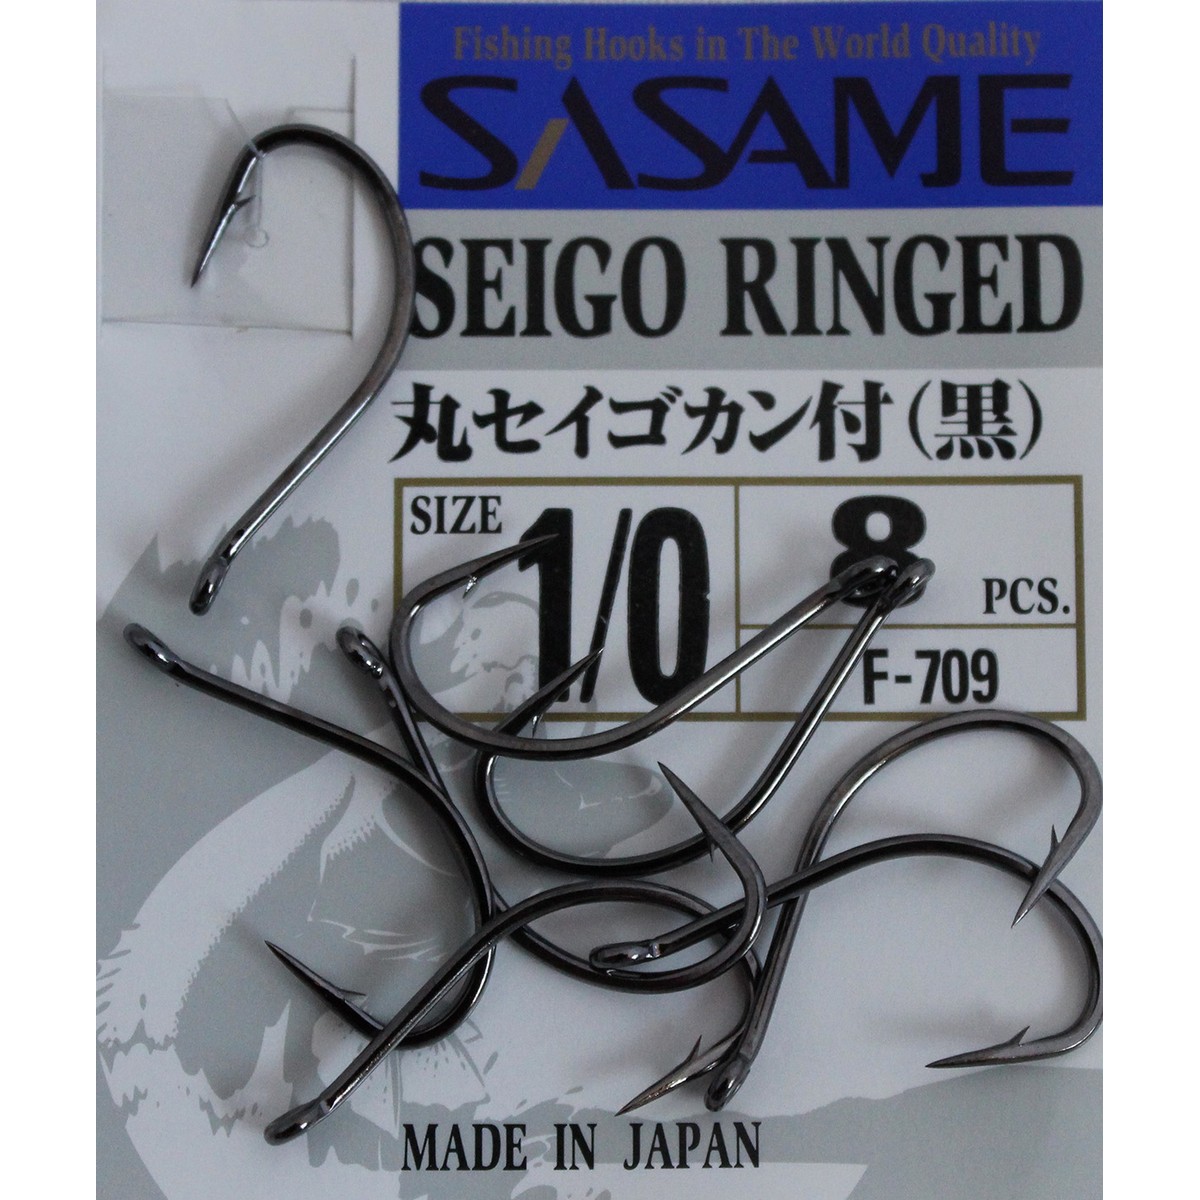 Sasame Seigo Ringed F-709